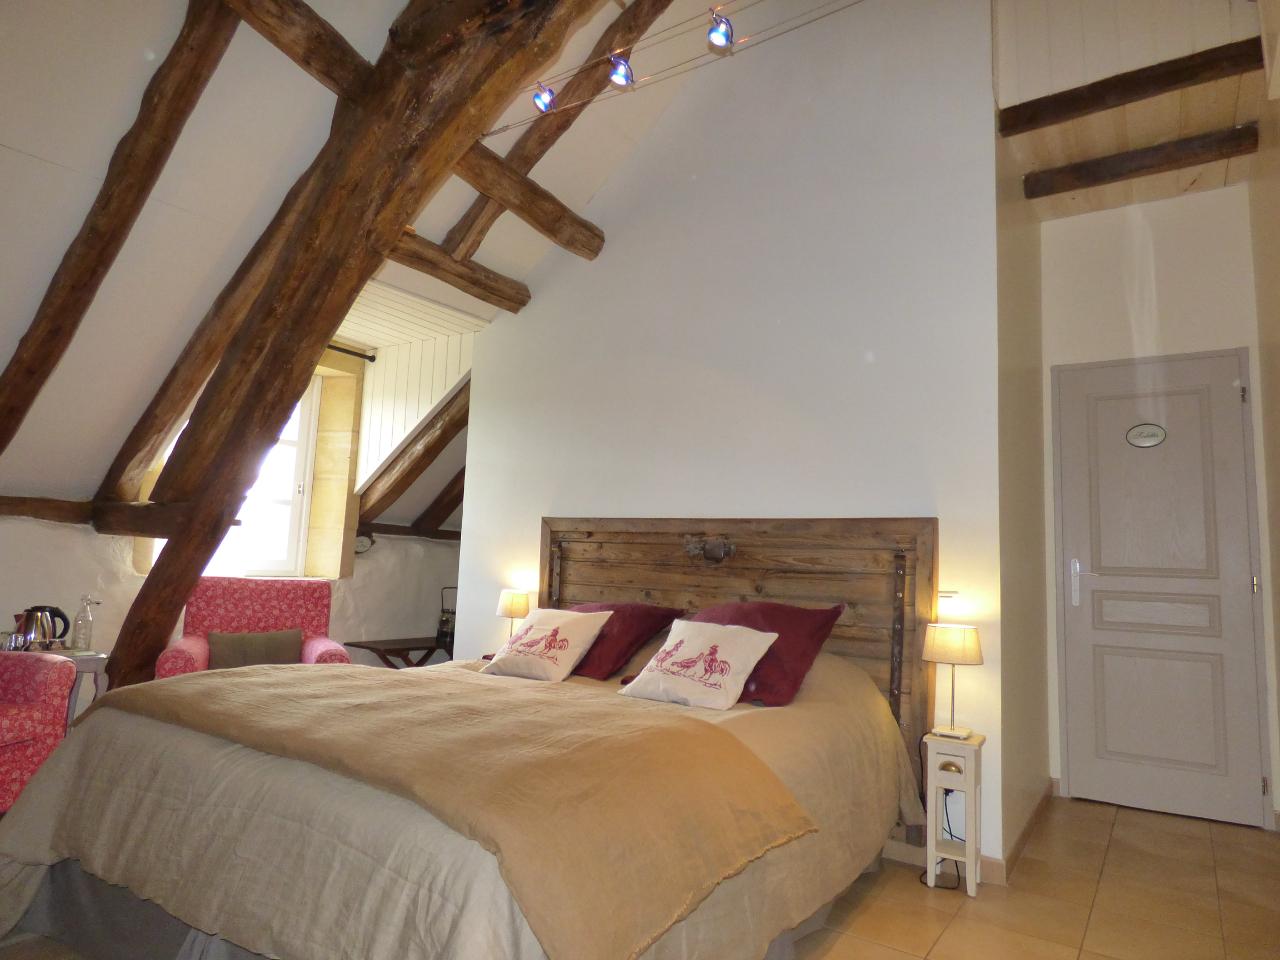 Hôte GreenGo: BRITAVIT Chambres et table d'Hôtes en Périgord - Image 32